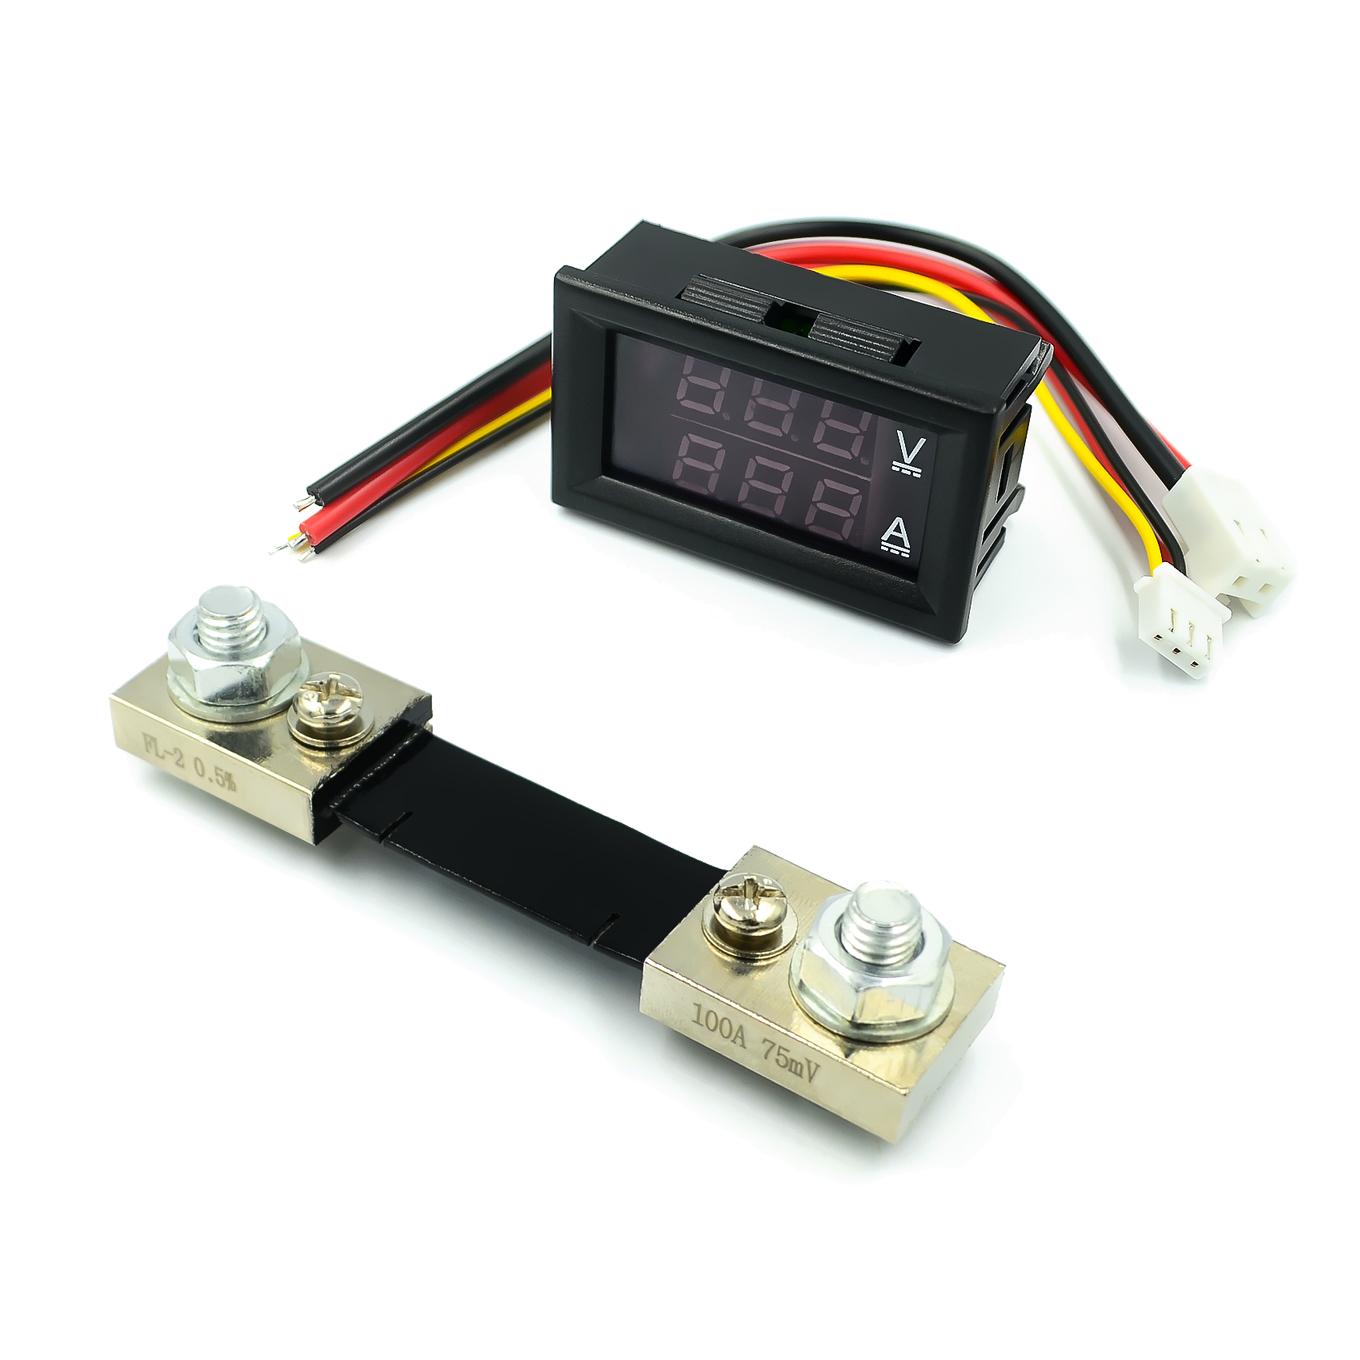 Mini 0.28inch LED Digital Voltmeter Ammeter DC 100V 50A 100A Volt Ampere Meter Amperemeter Voltage Indicator Tester with shunt